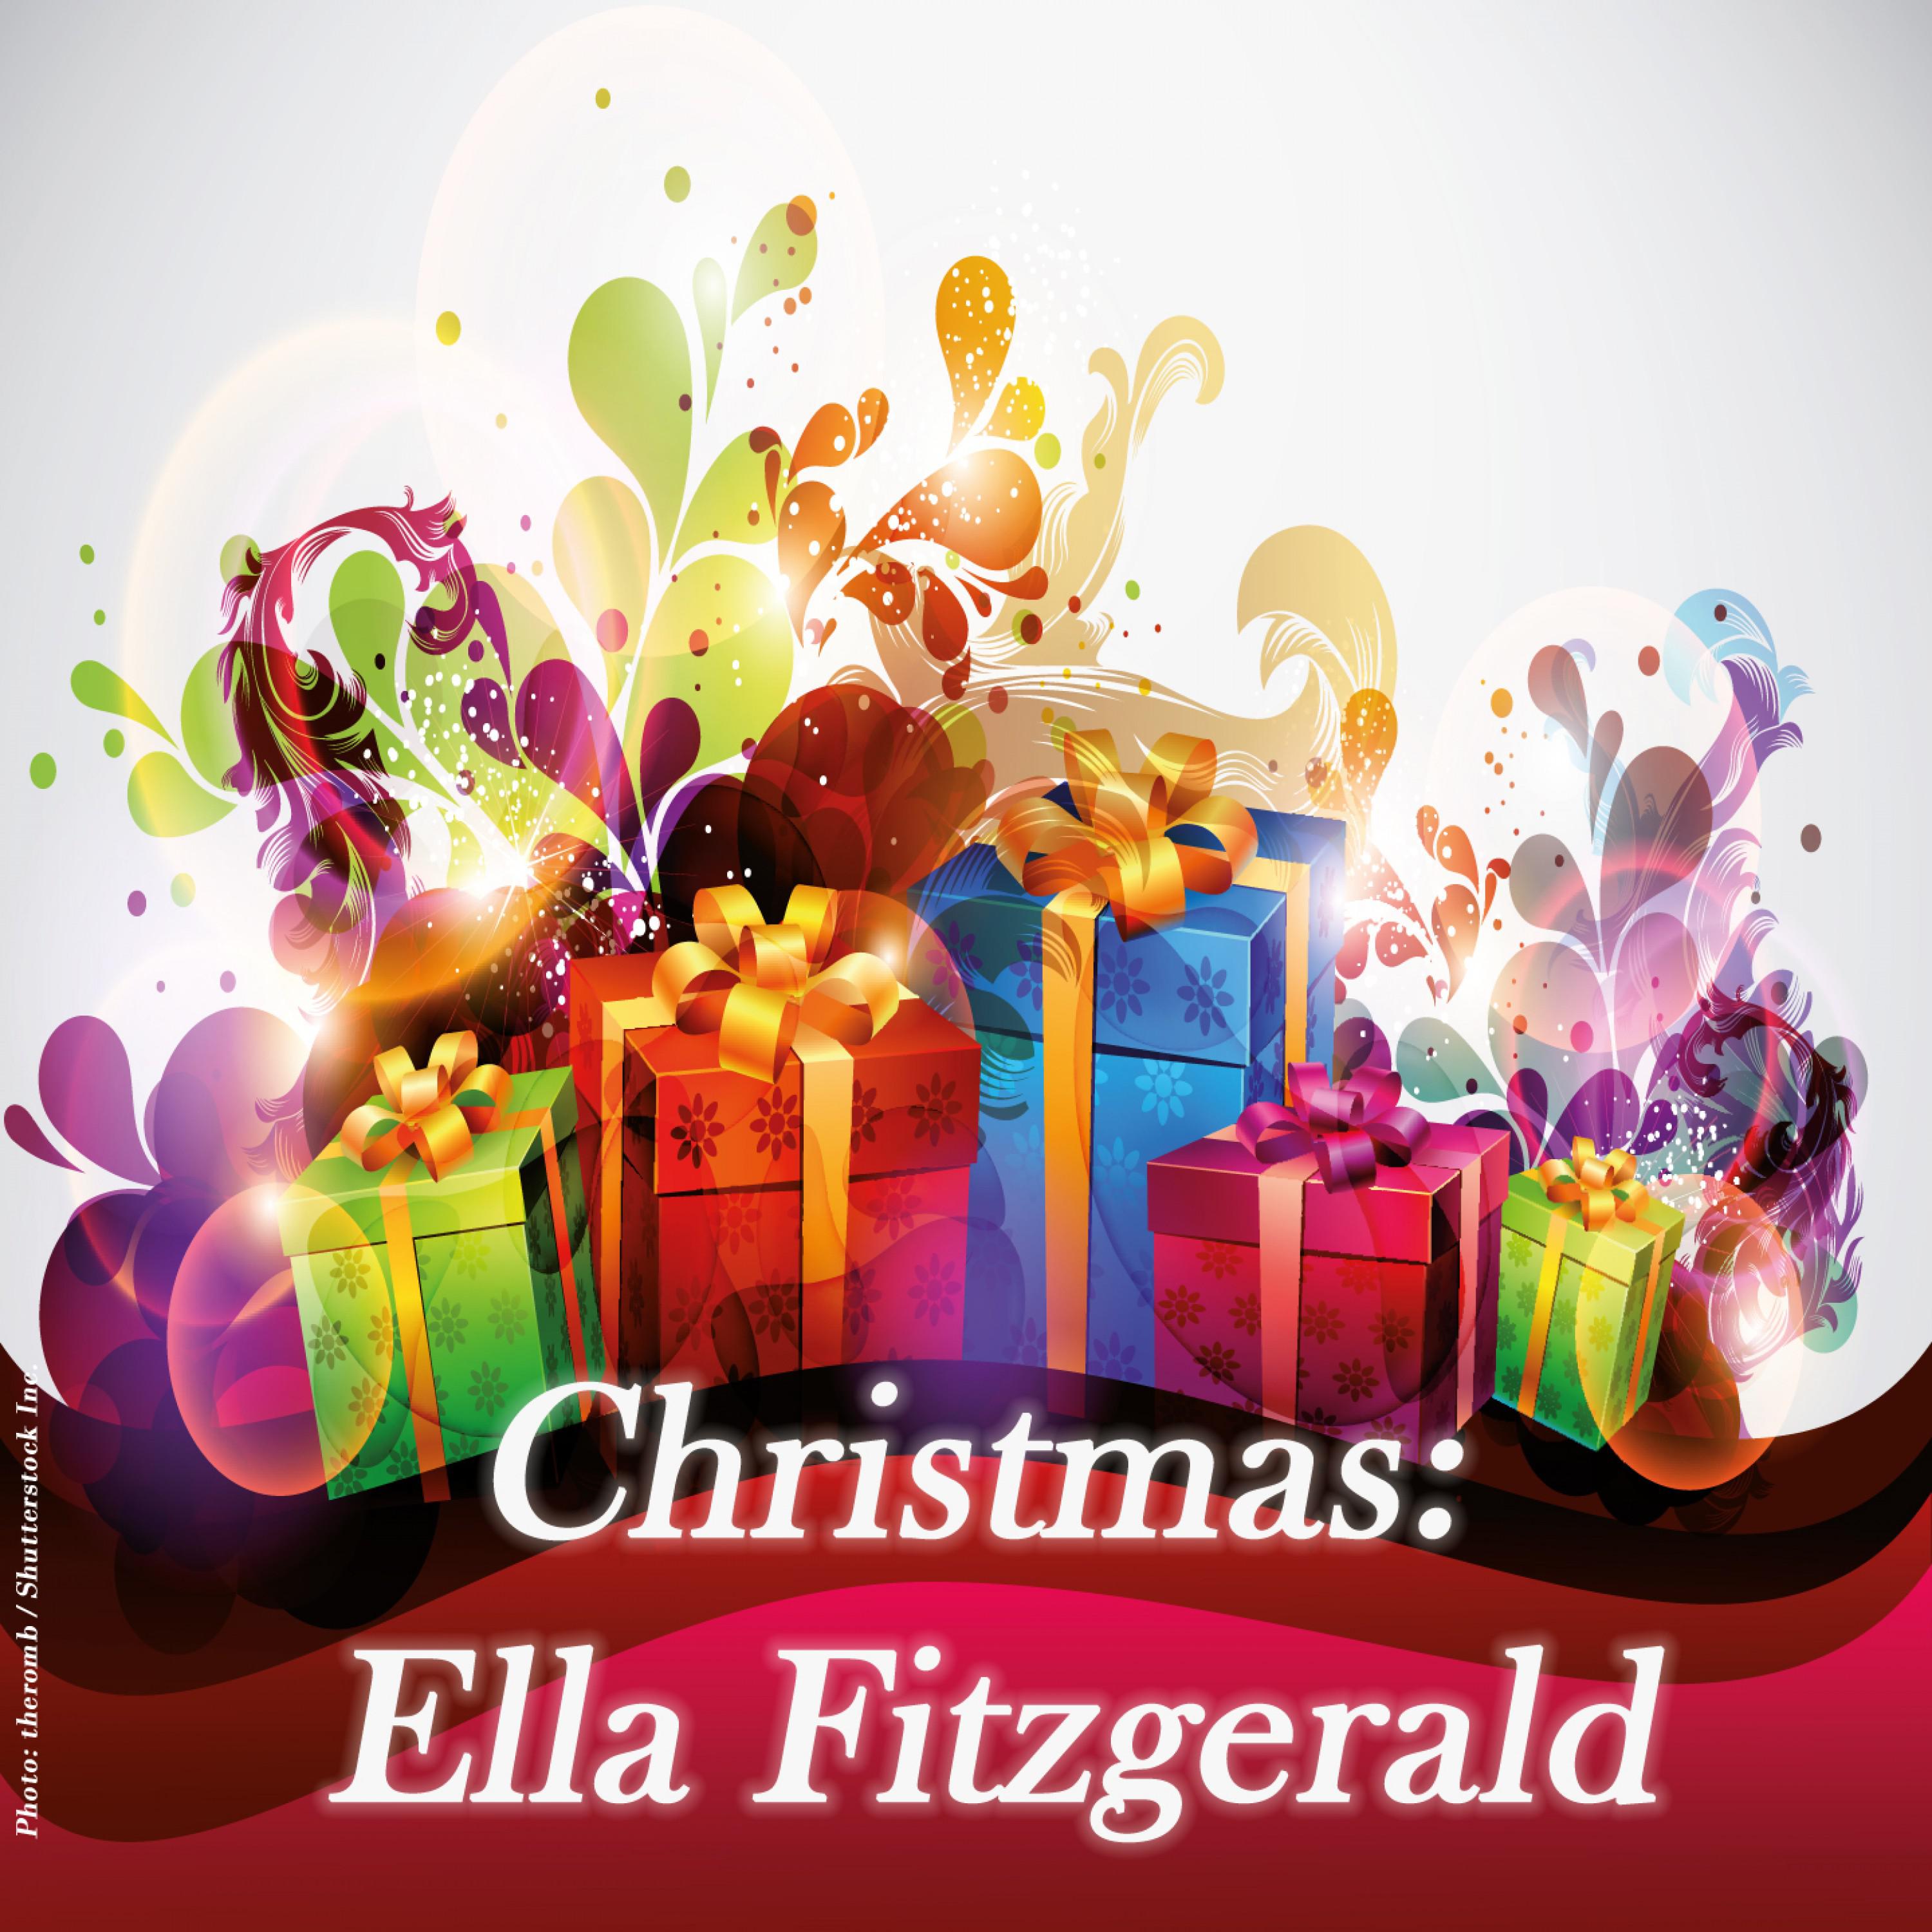 Christmas: Ella Fitzgerald